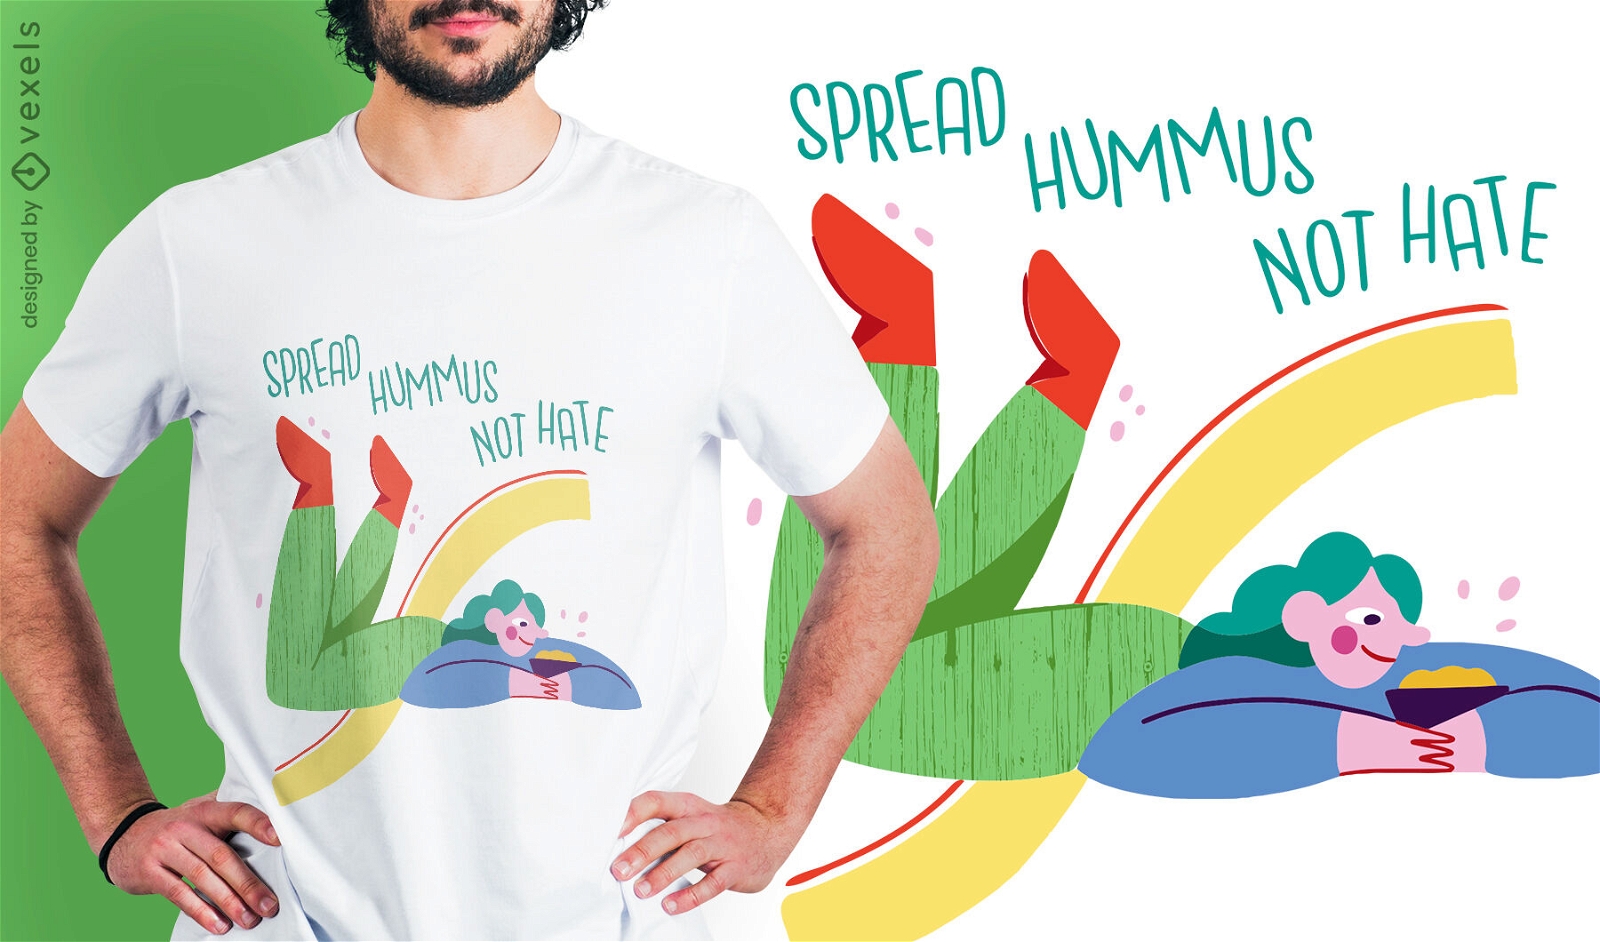 Design engra?ado de t-shirt de homus vegan